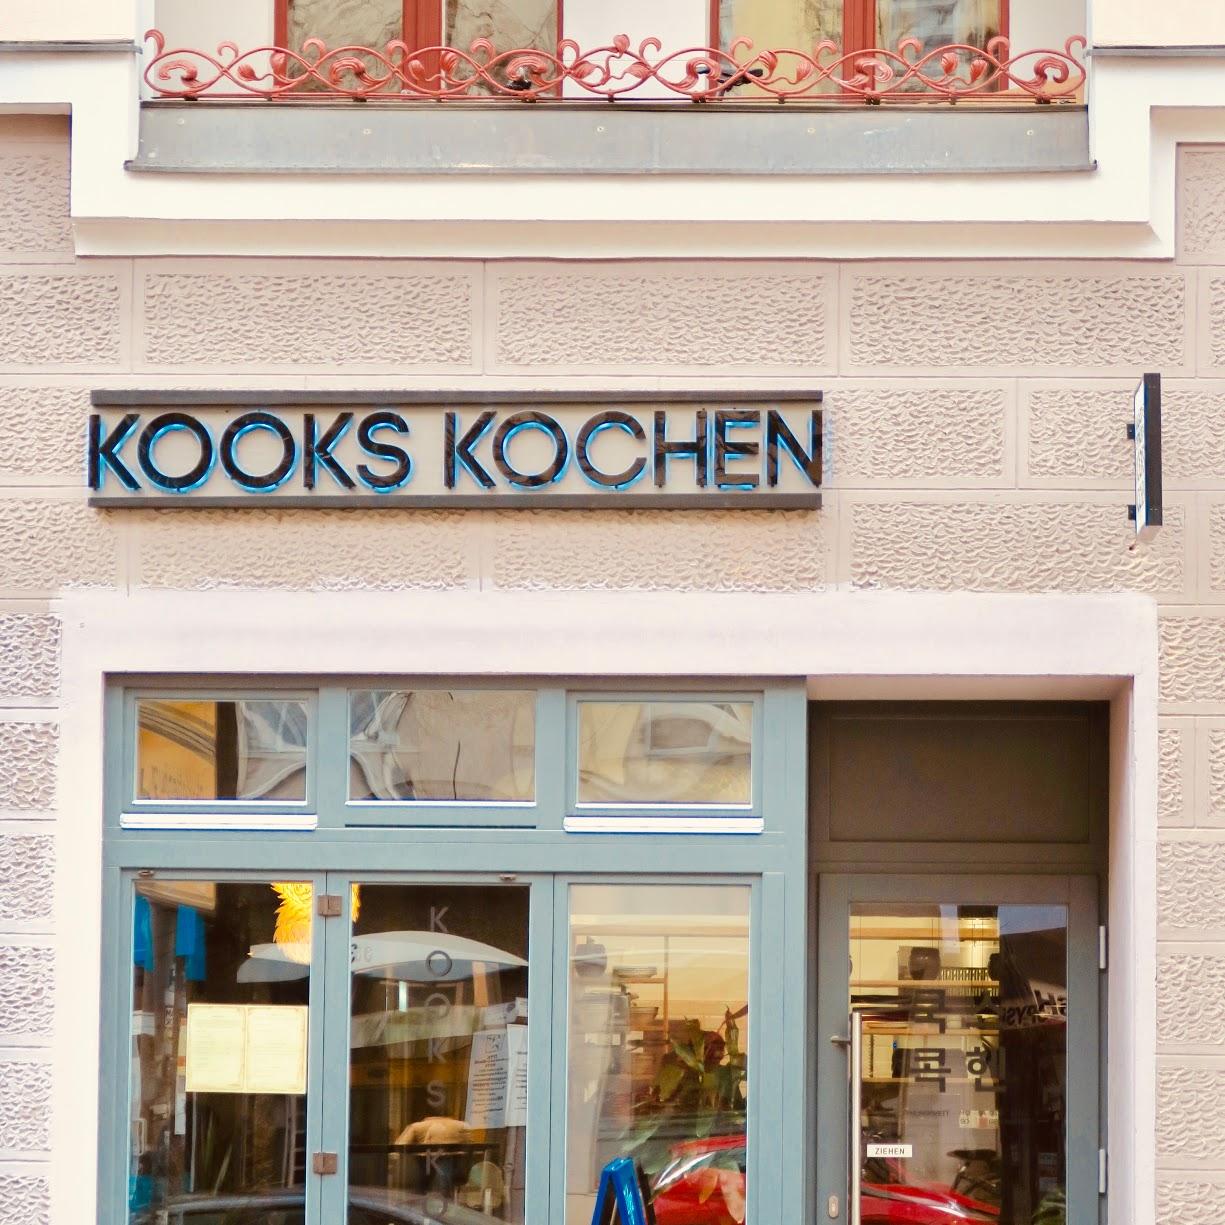 Restaurant "Kooks Kochen" in Berlin